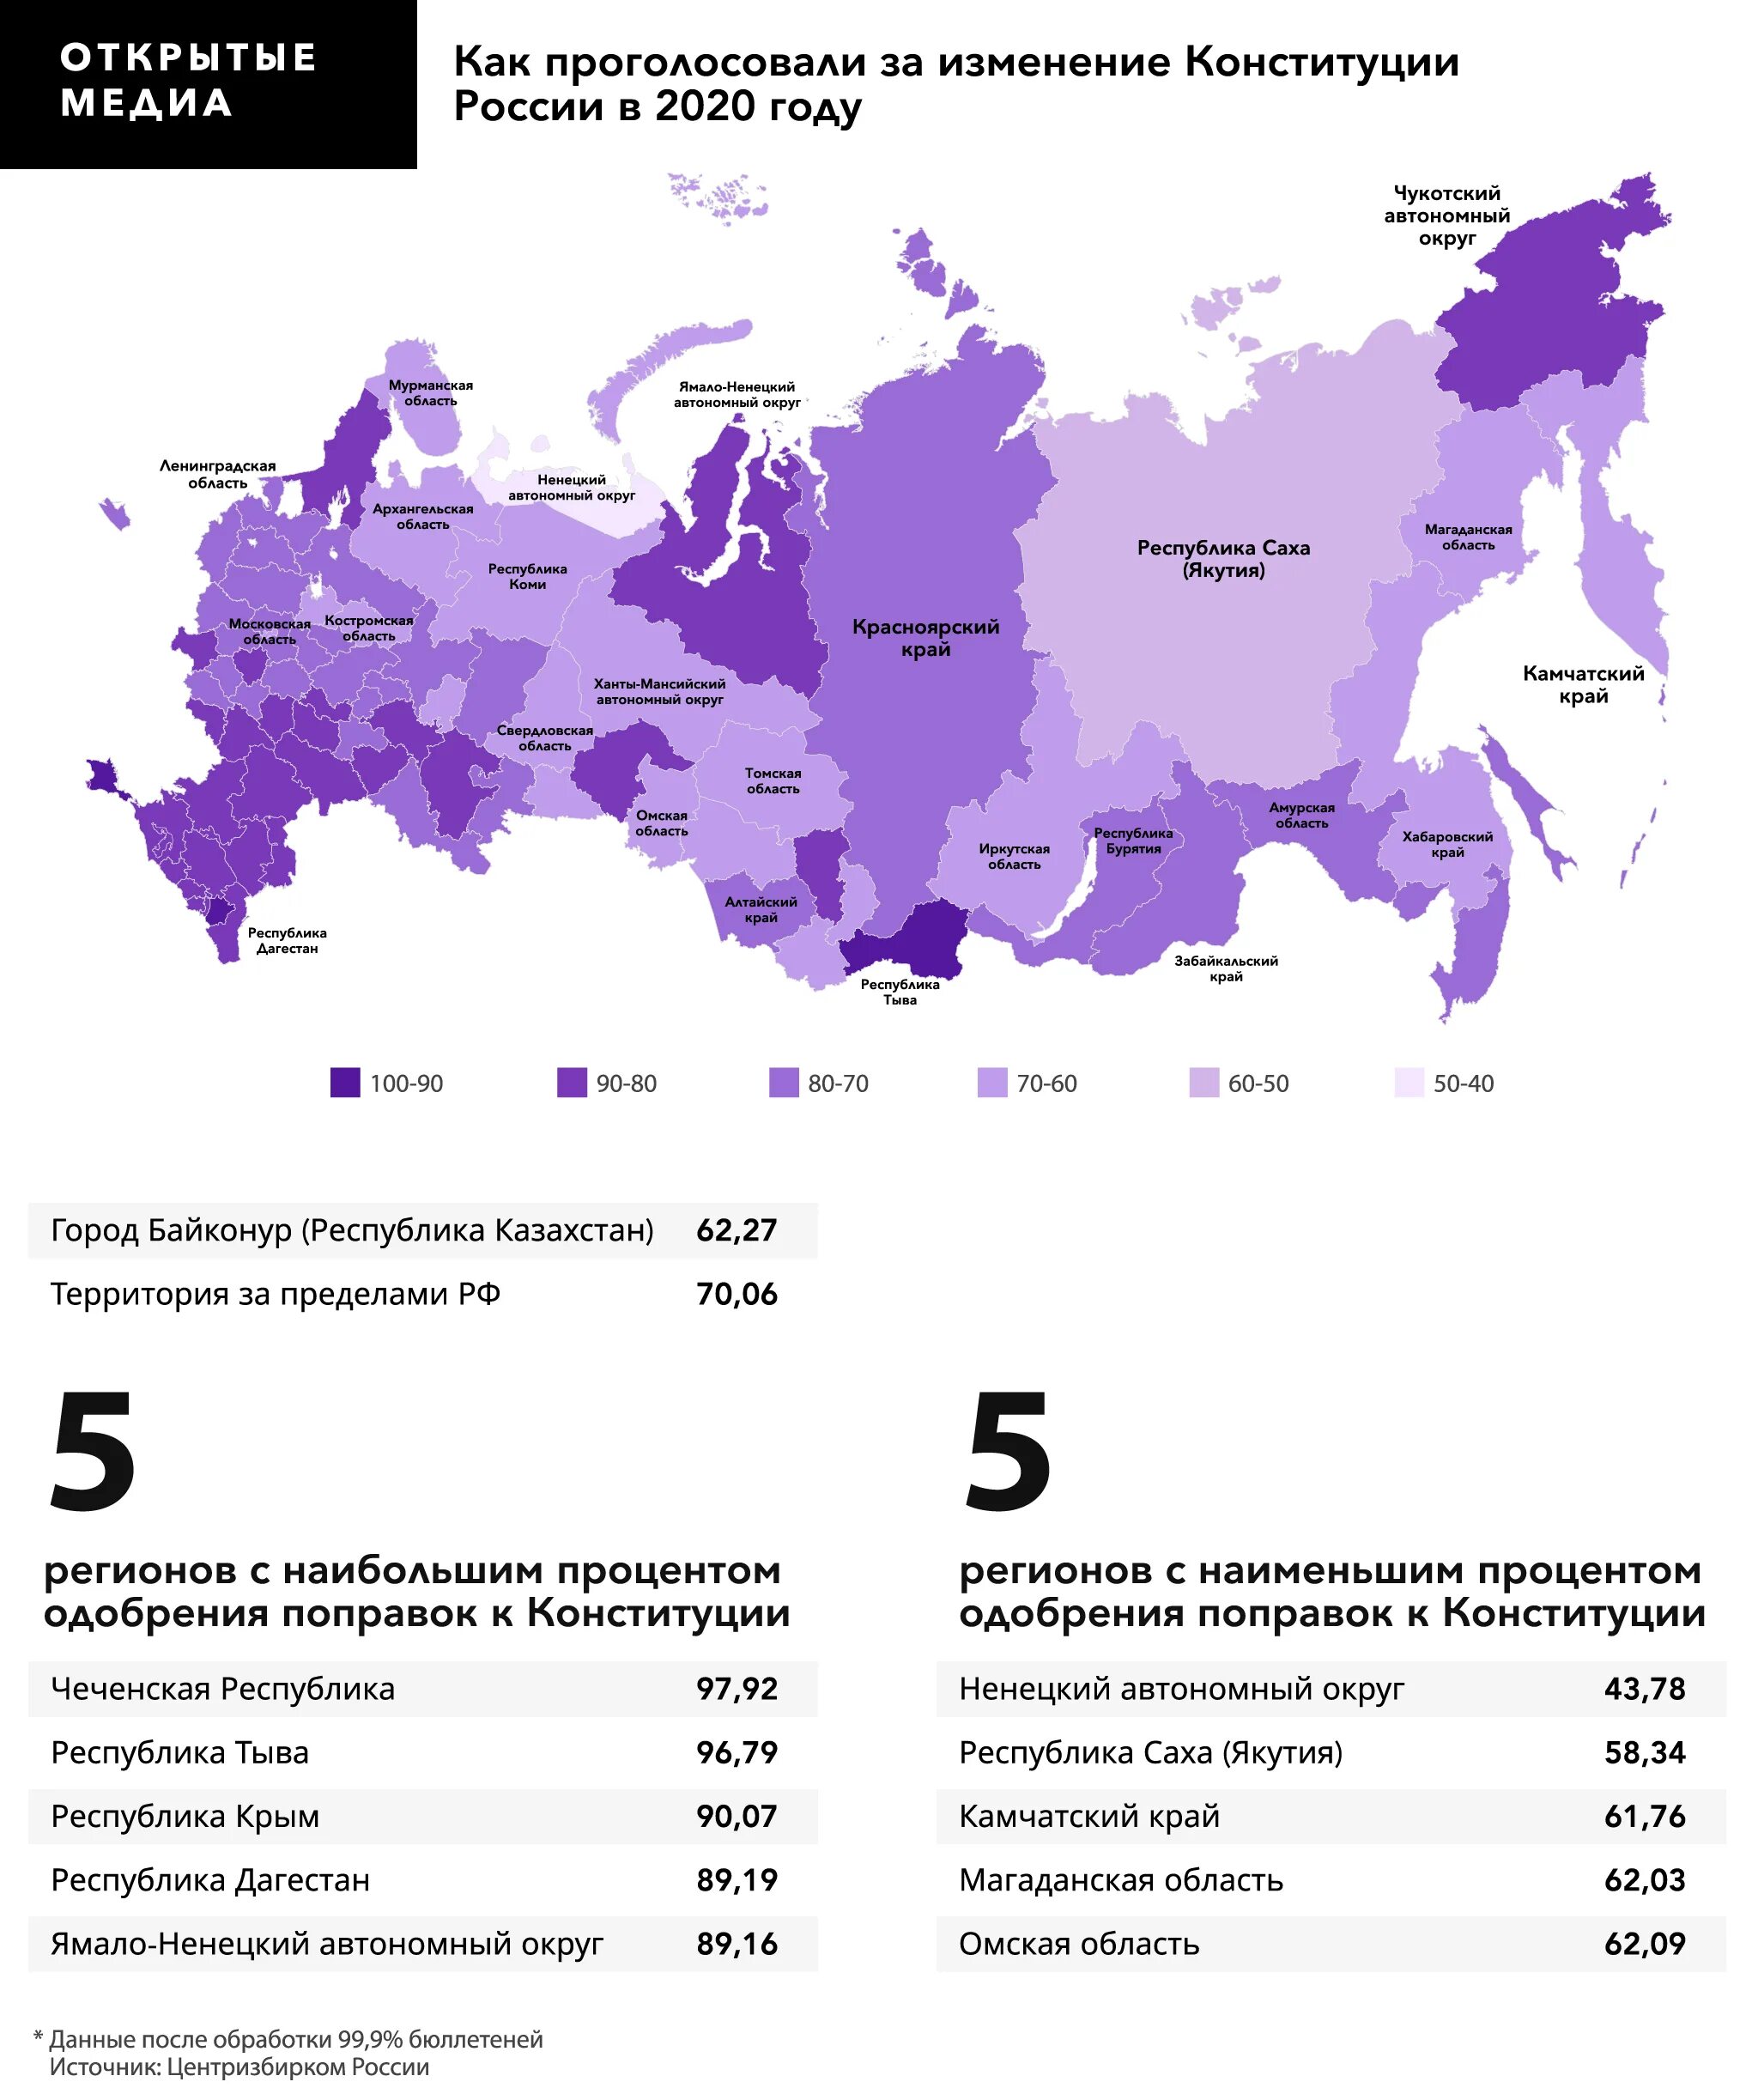 Сколько в россии должны проголосовать. Ujkjcjdfybt GJ htubjufv]. Статистика голосования по регионам. Голосование по регионамонам. Голосование за Путина по регионам.